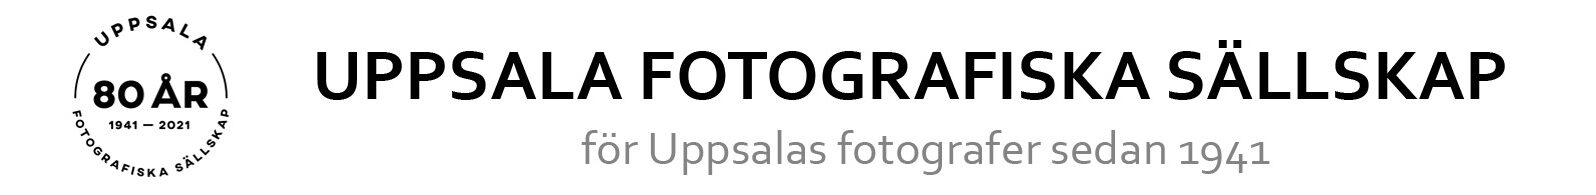 Uppsala fotografiska sällskap